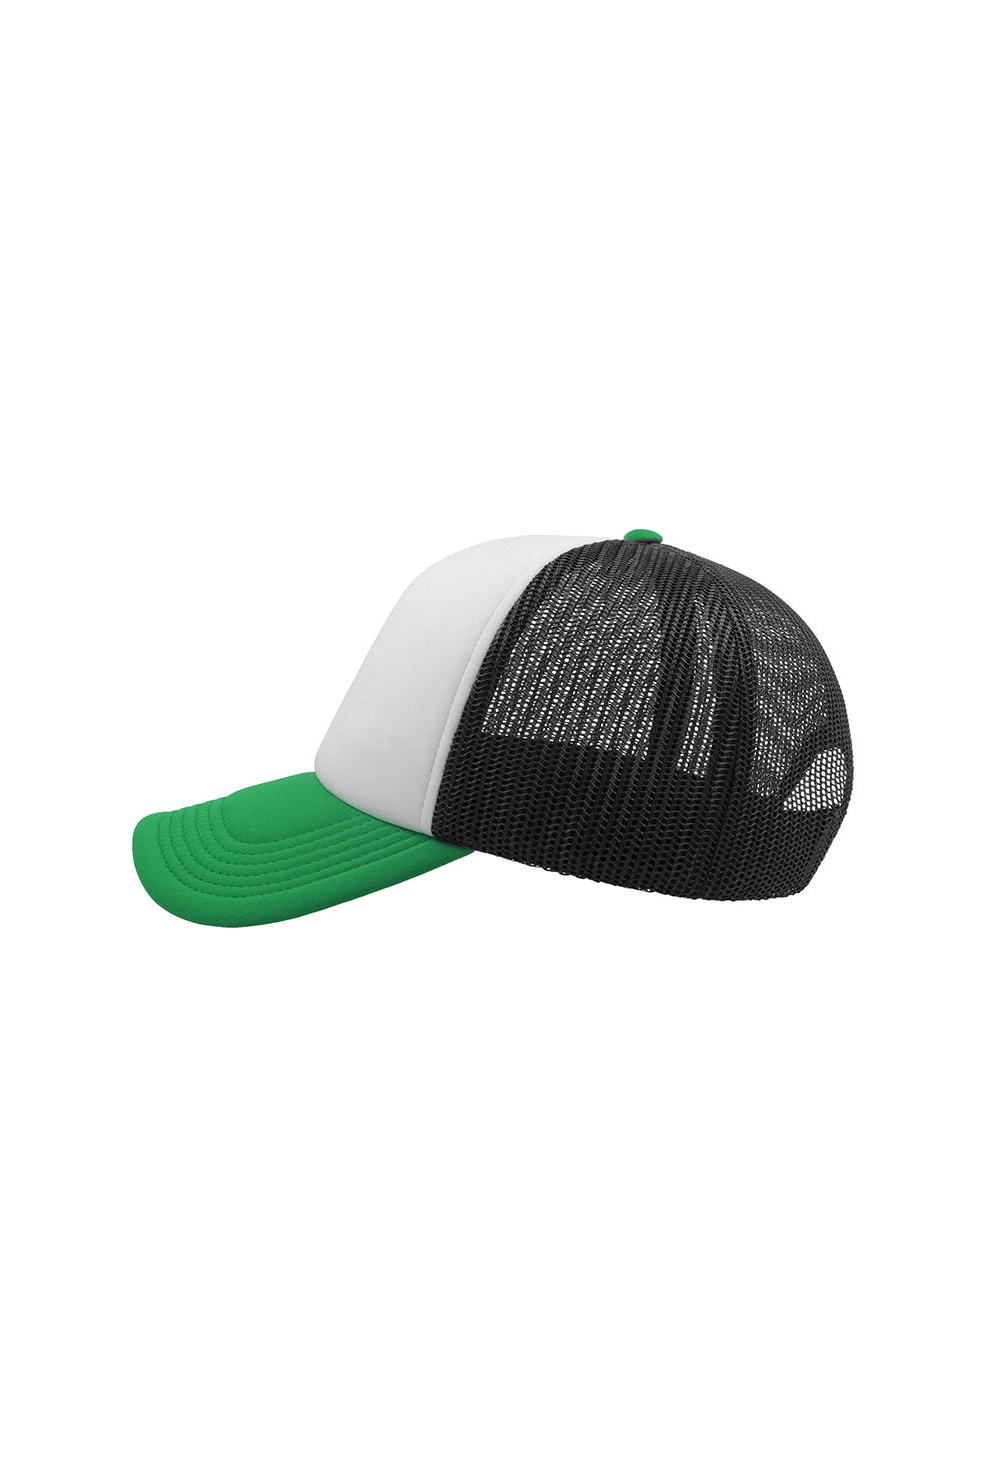 Бейсболка RAPP, зеленая с белым и черным